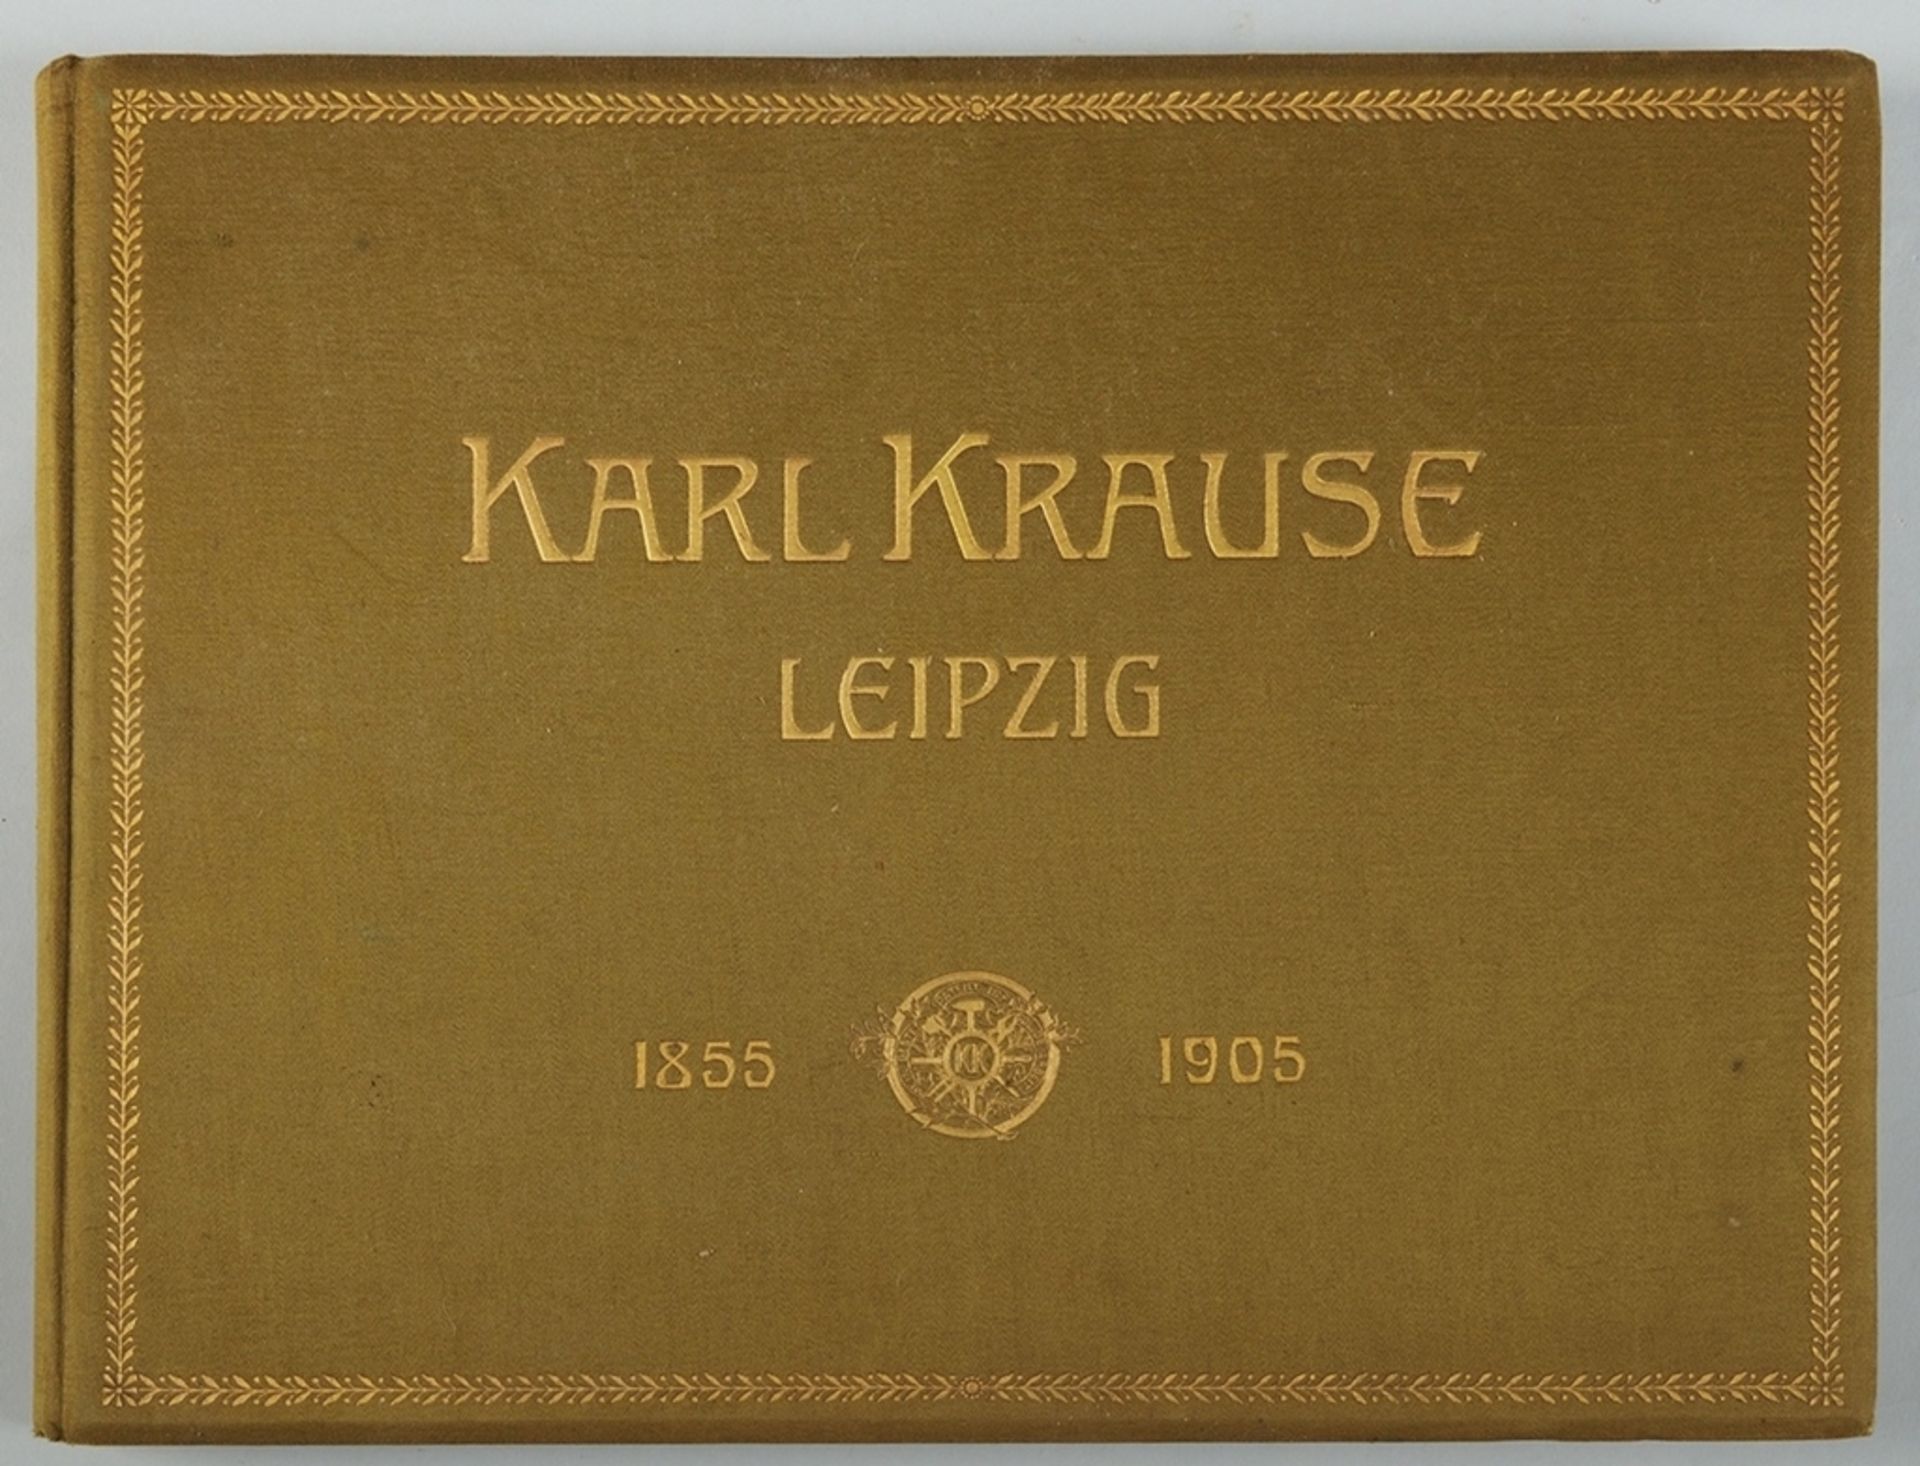 Karl Krause, Leipzig